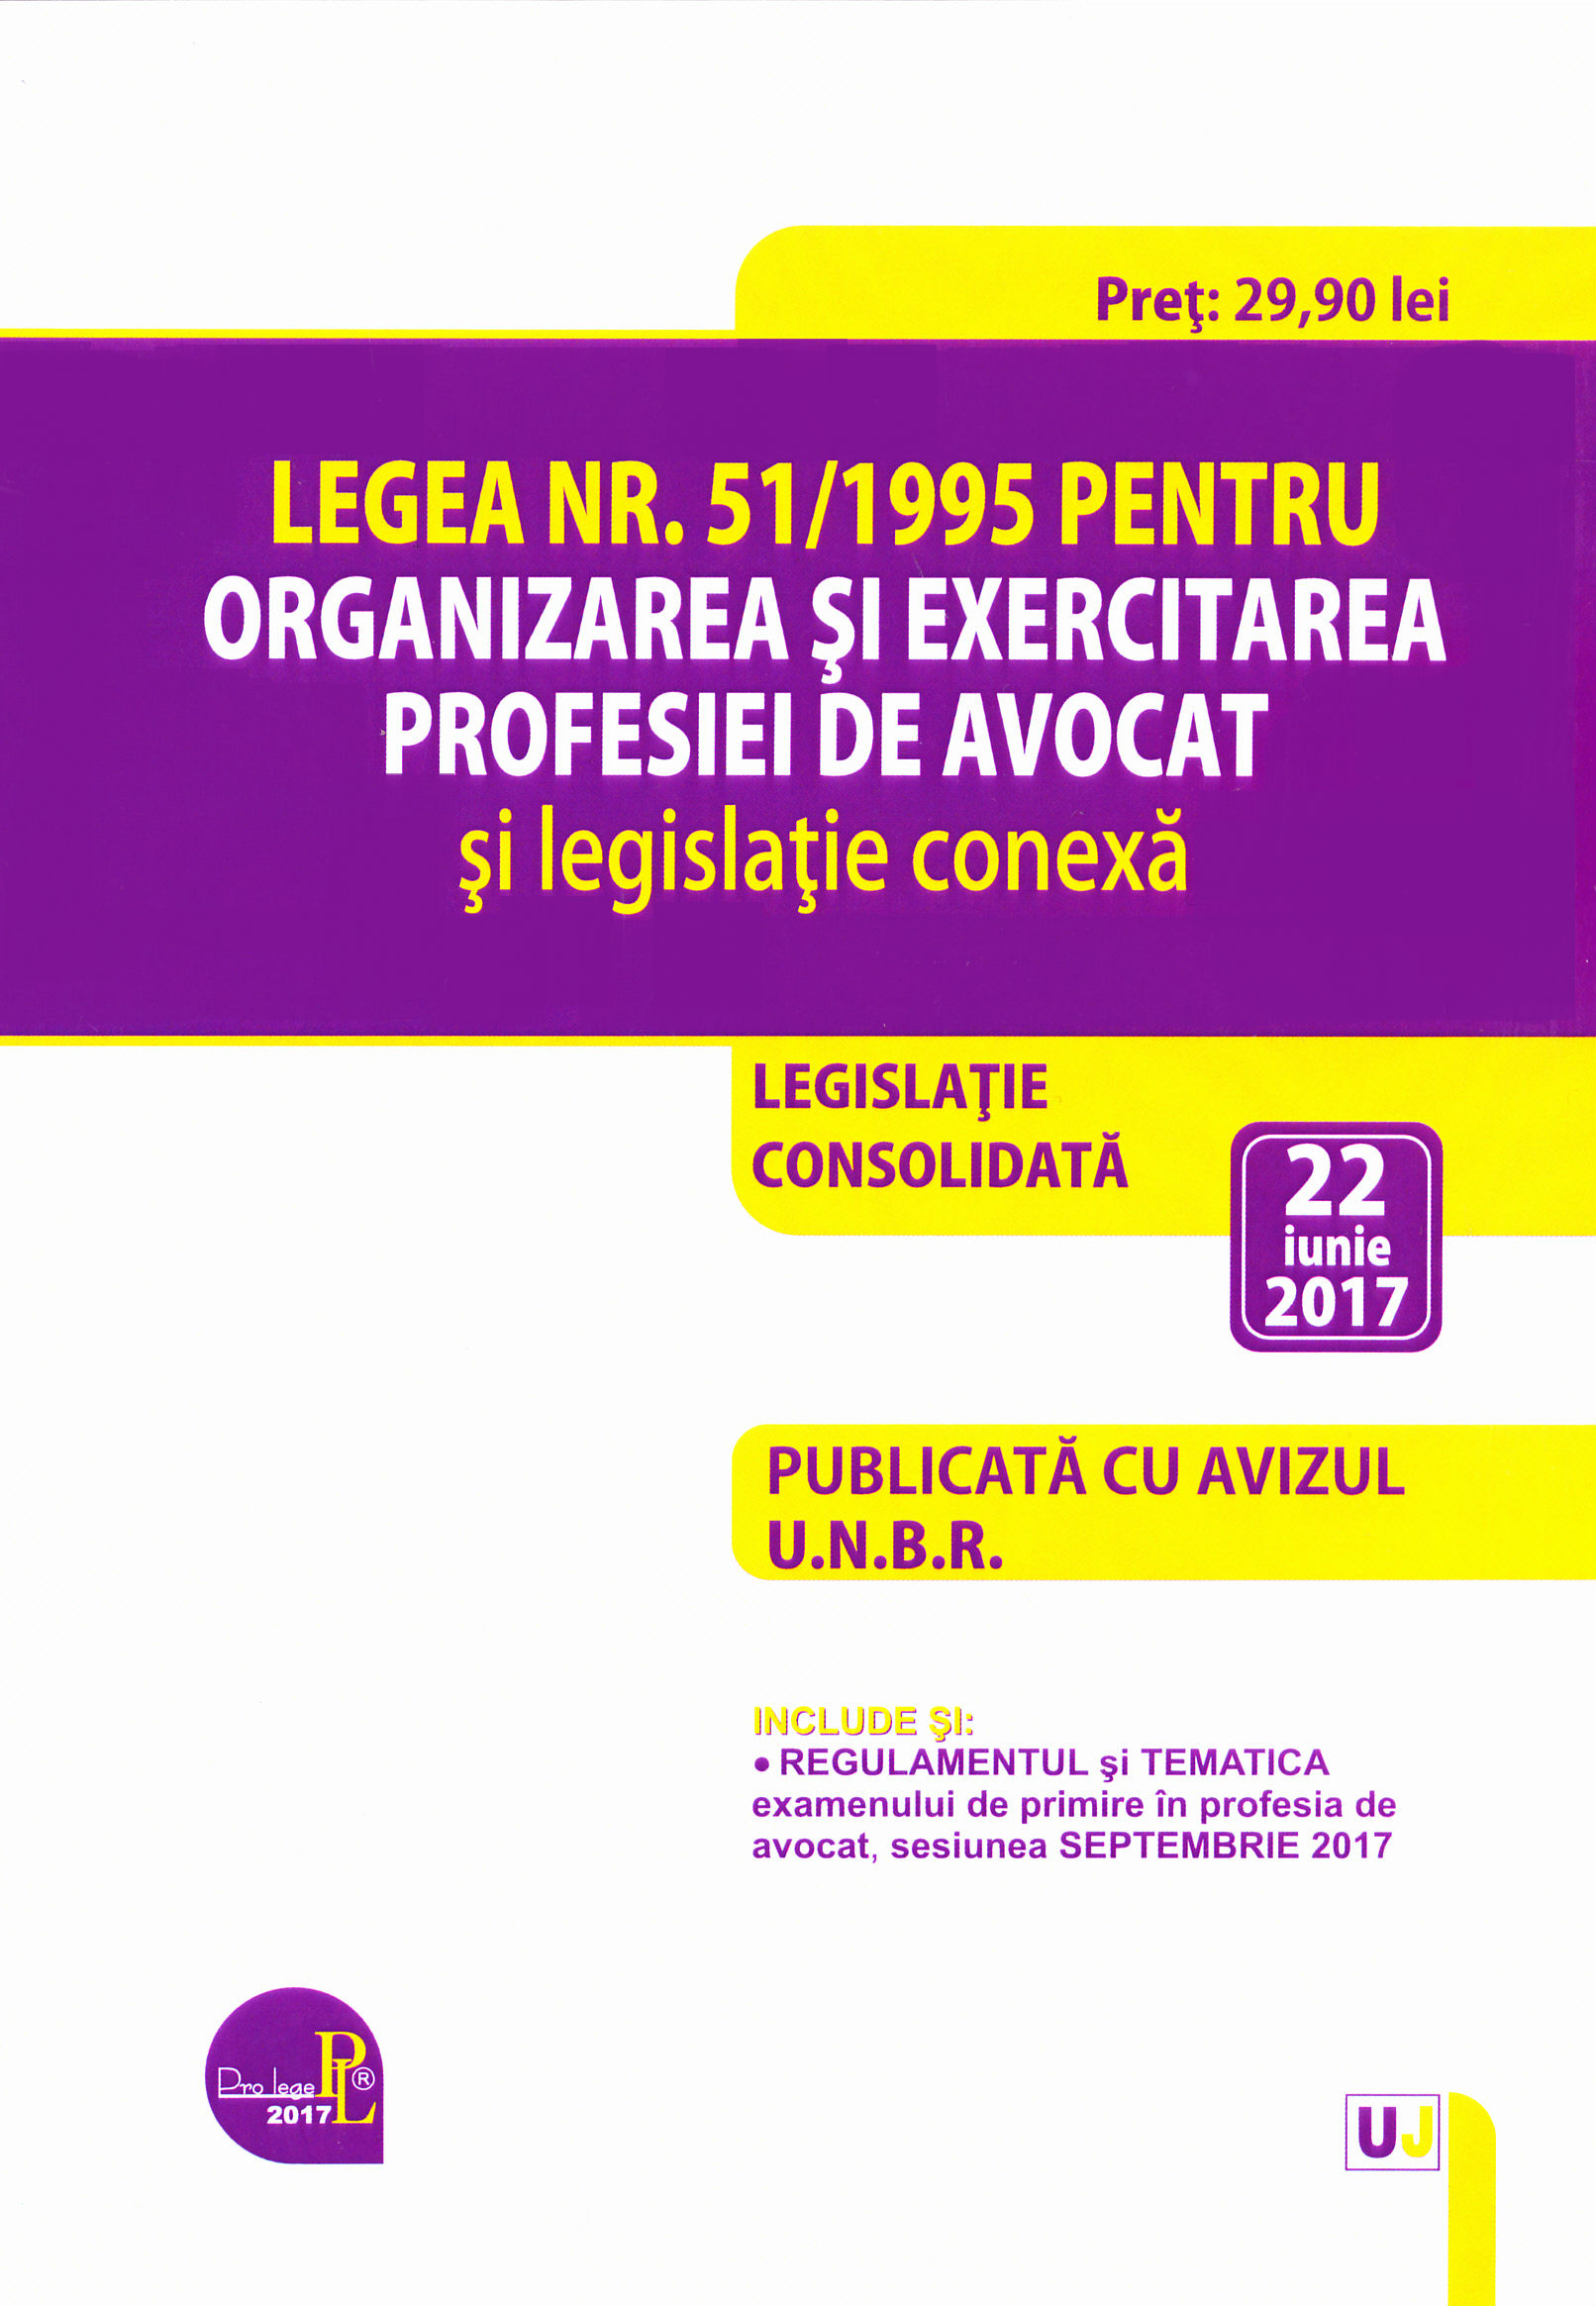 Legea nr.51 din 1995 pentru organizarea si exercitarea profesiei de avocat act. 22 iunie 2017